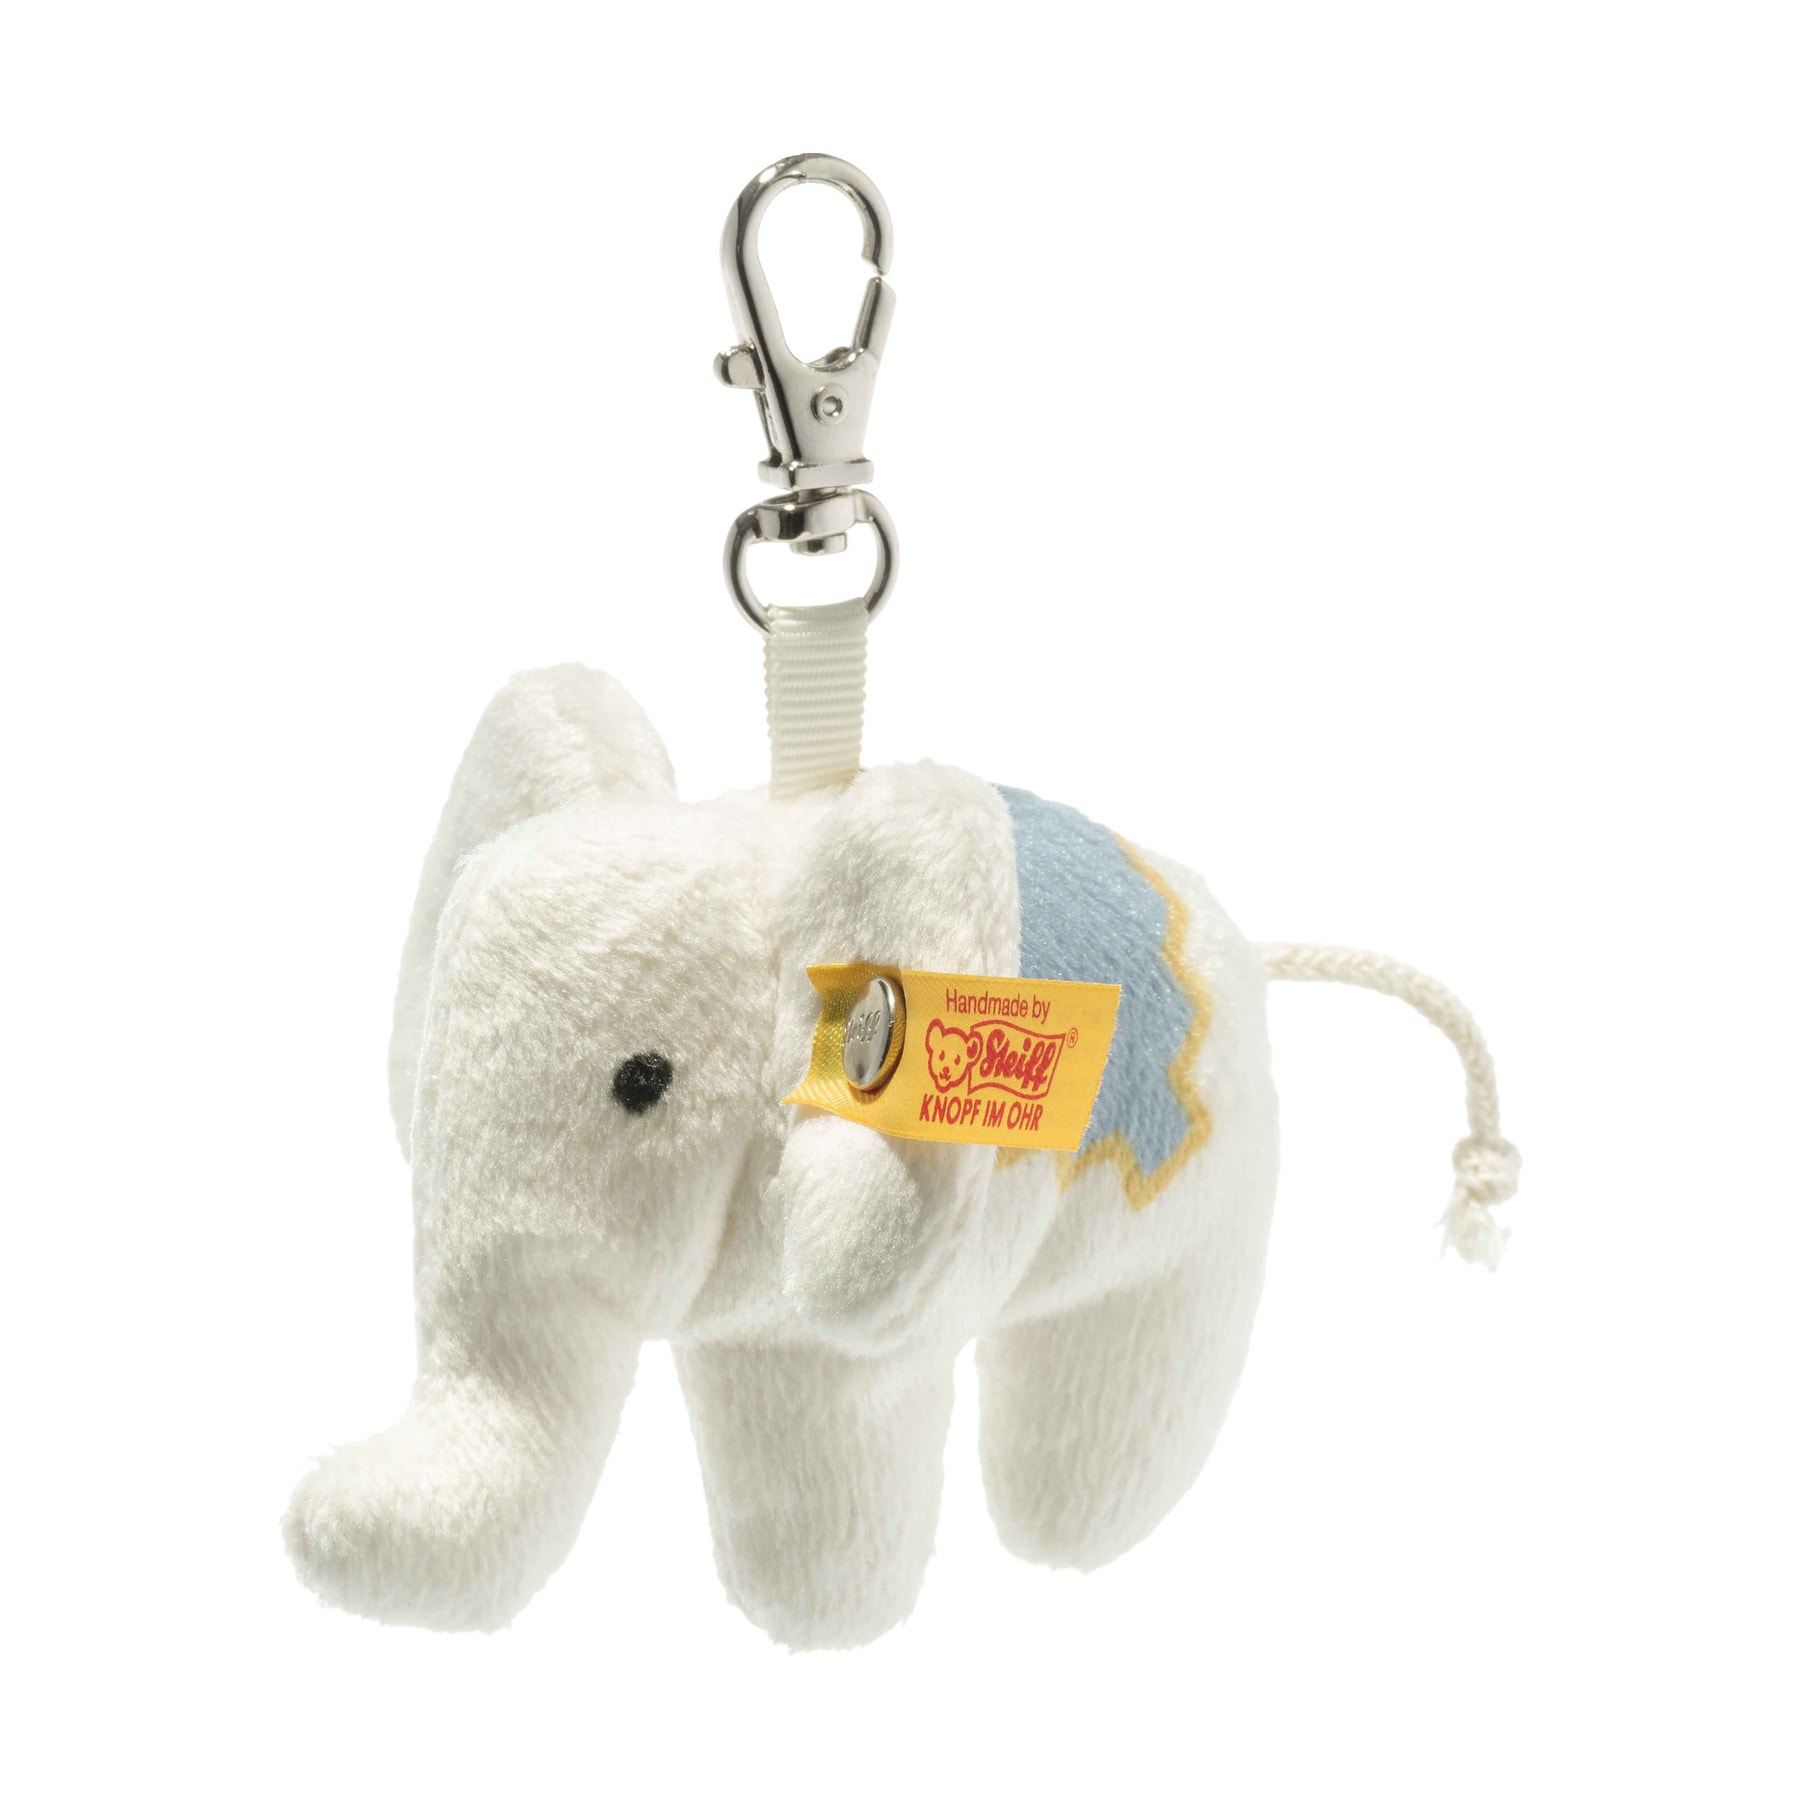 EAN 605161 Steiff Little Elephant Necklace collectable teddy 